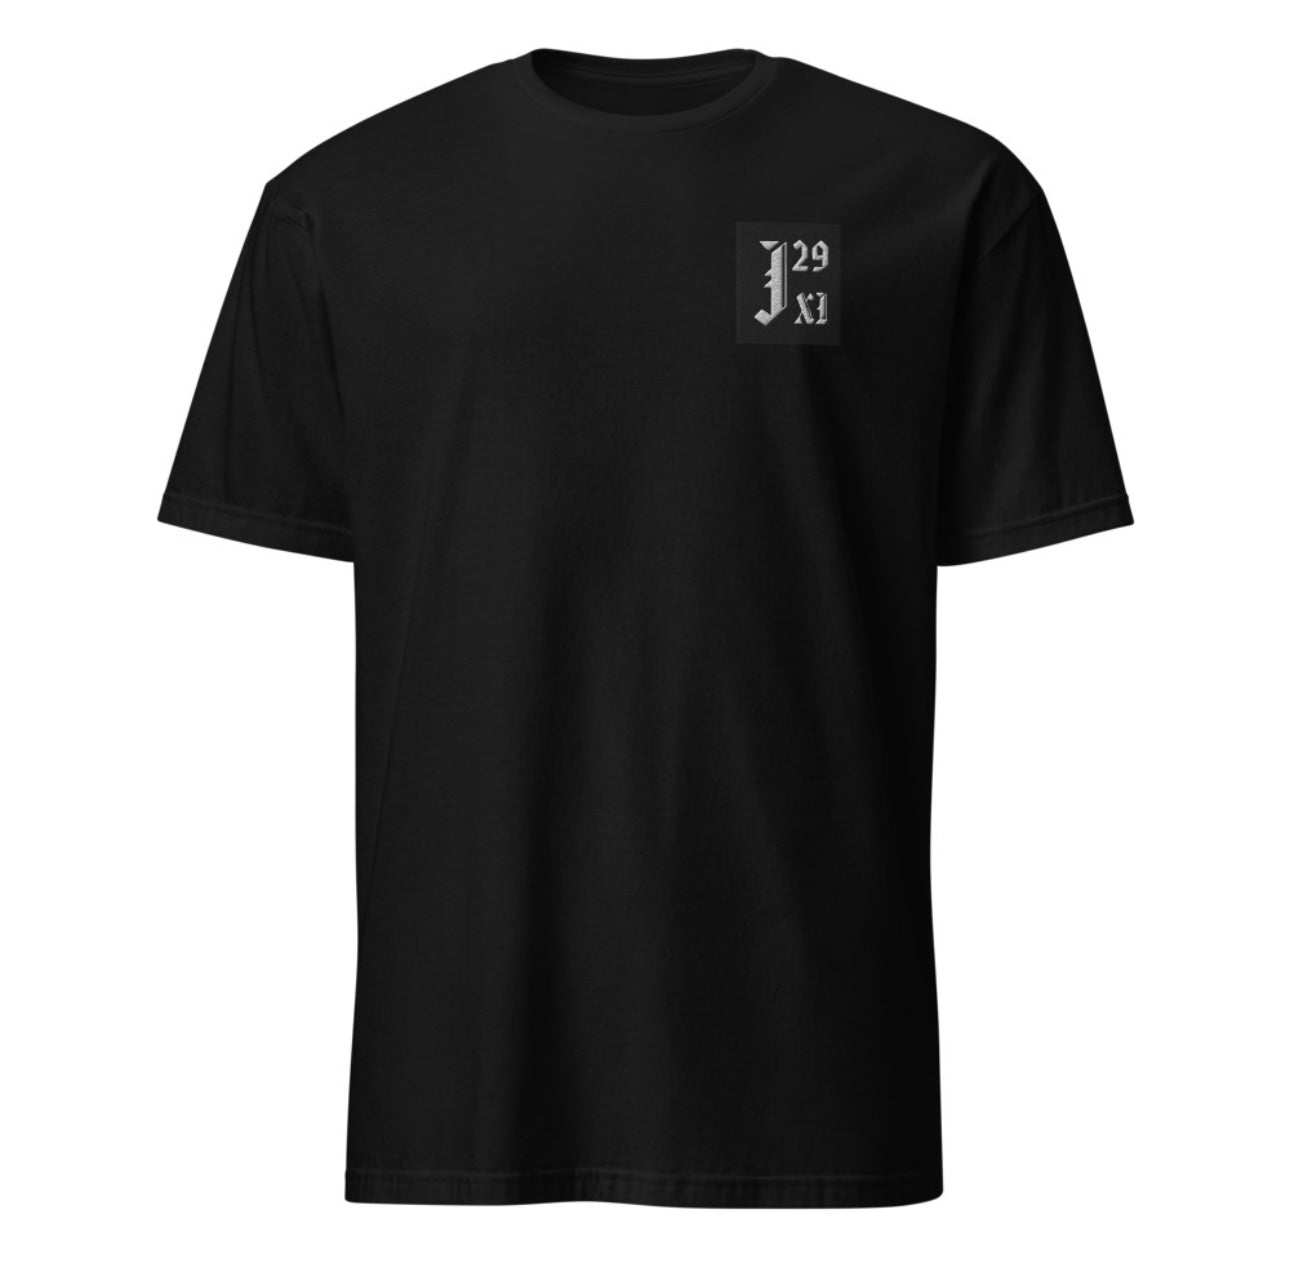 J29:XI Logo Shirt “Big J”